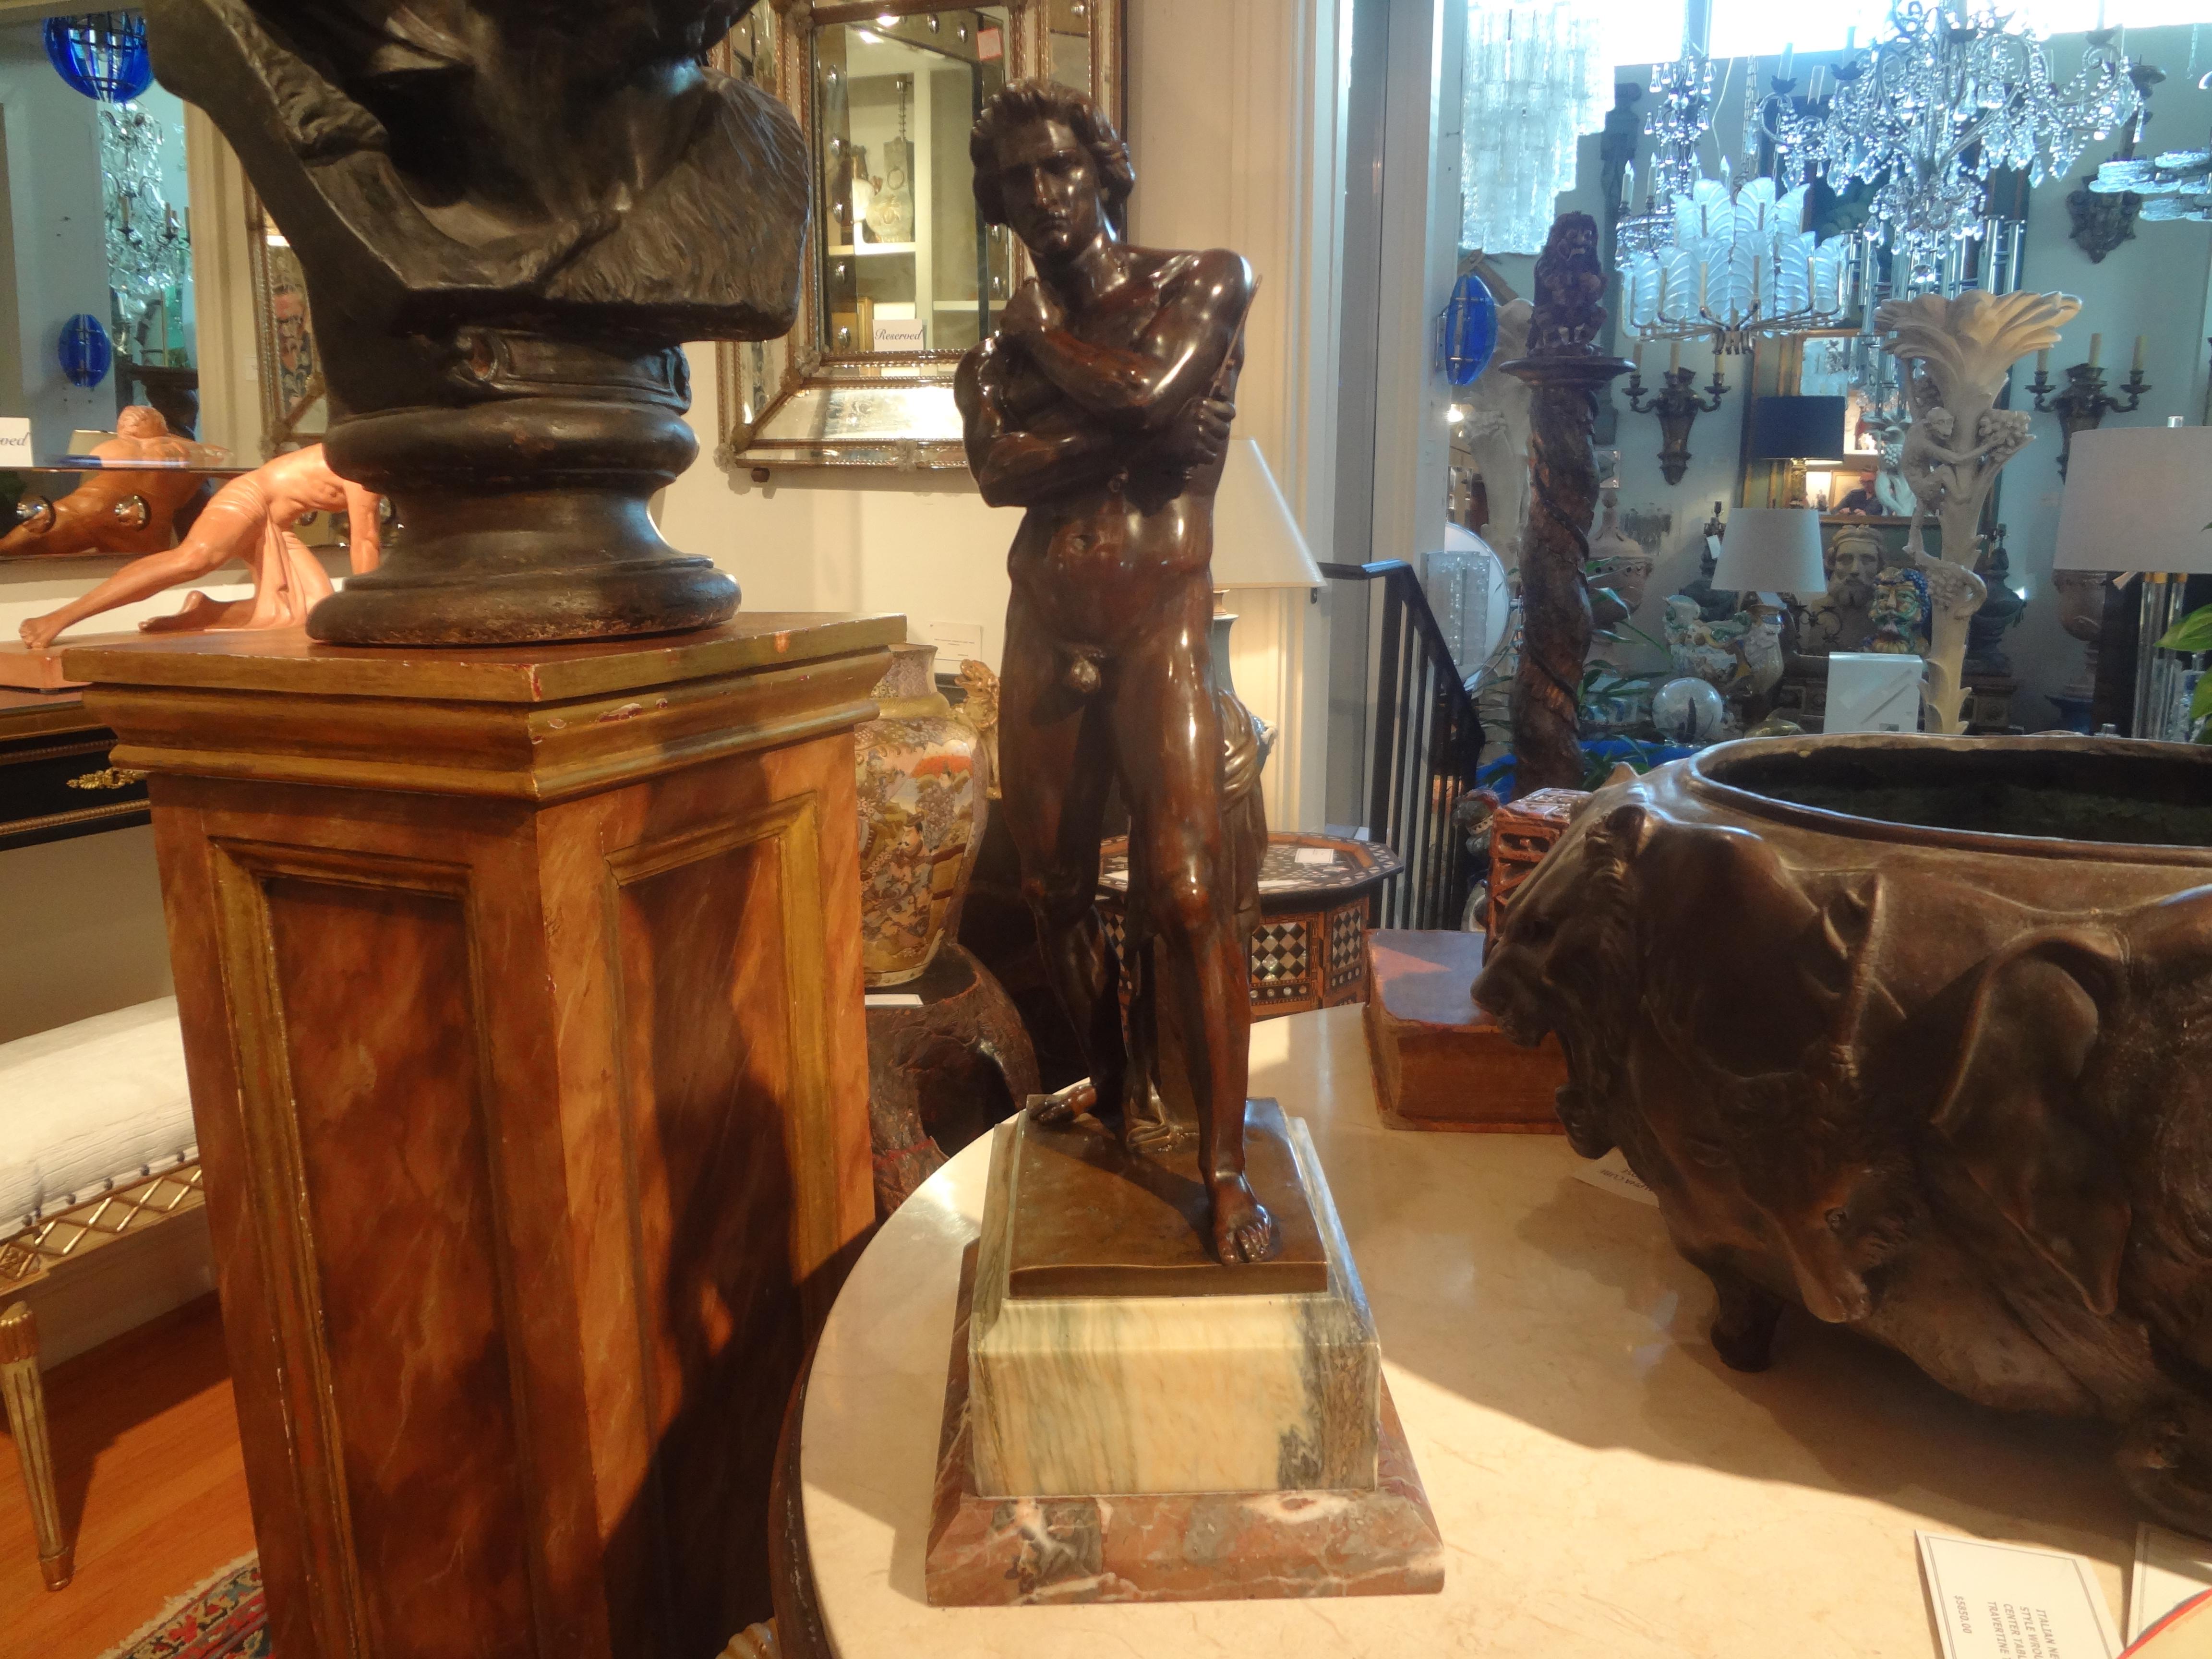 19. Jahrhundert Französisch Bronze-Skulptur eines klassischen griechischen.
Diese beeindruckende antike französische Bronzeskulptur zeigt eine stattliche männliche Figur, die ein Schwert hält.
Unsere klassische französische Bronzeskulptur aus dem